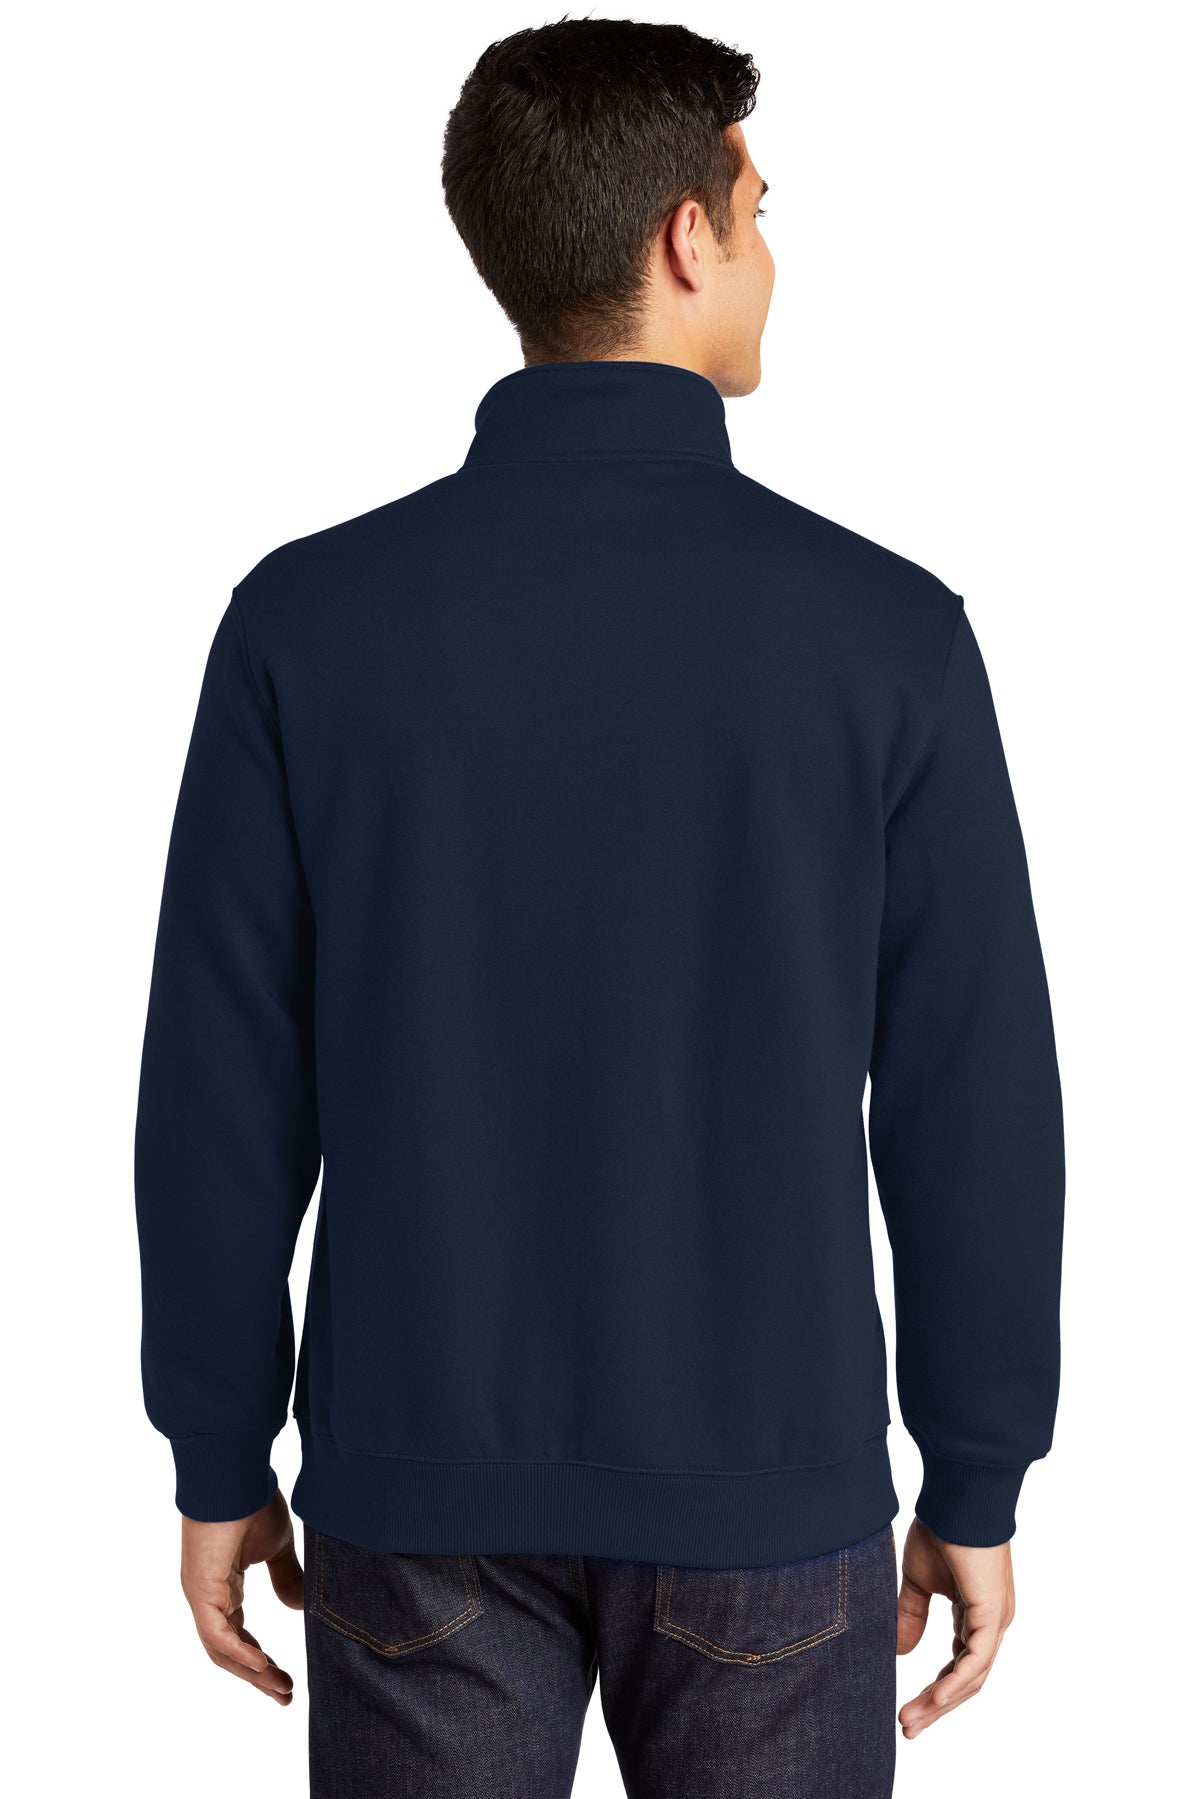 # ST253 Sport-Tek® 1/4-Zip Sweatshirt